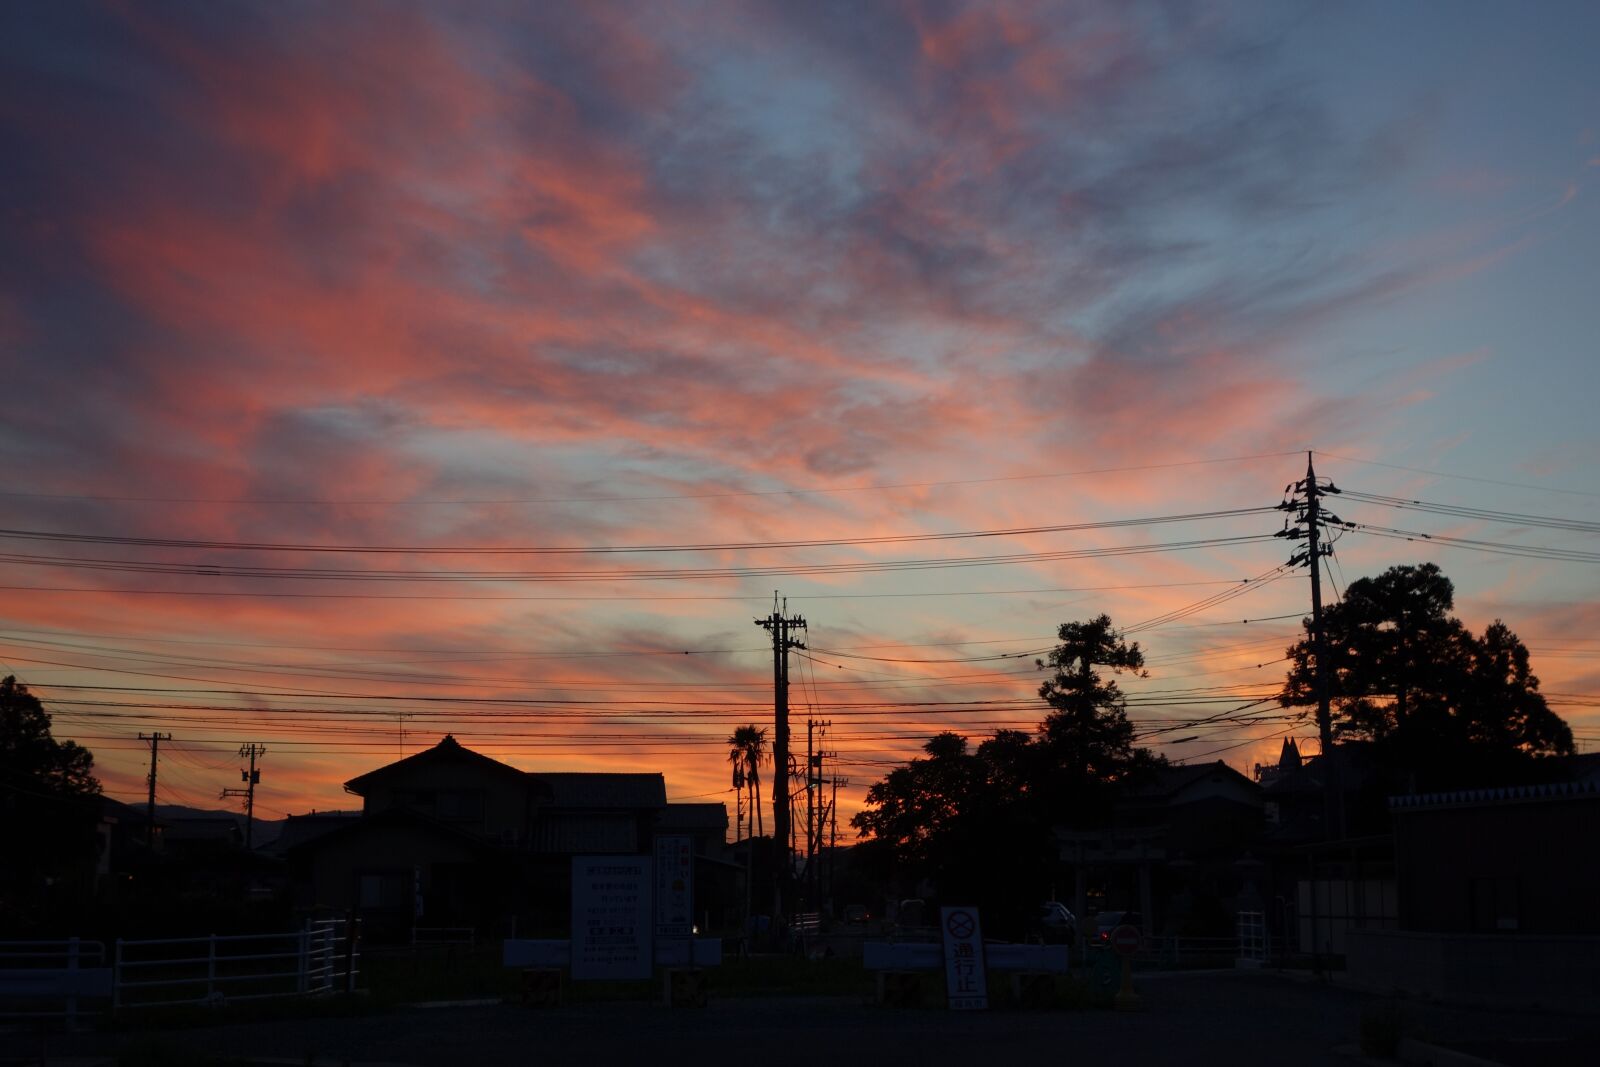 Sony Cyber-shot DSC-RX100 sample photo. Sunset, sky, cloudy sky photography